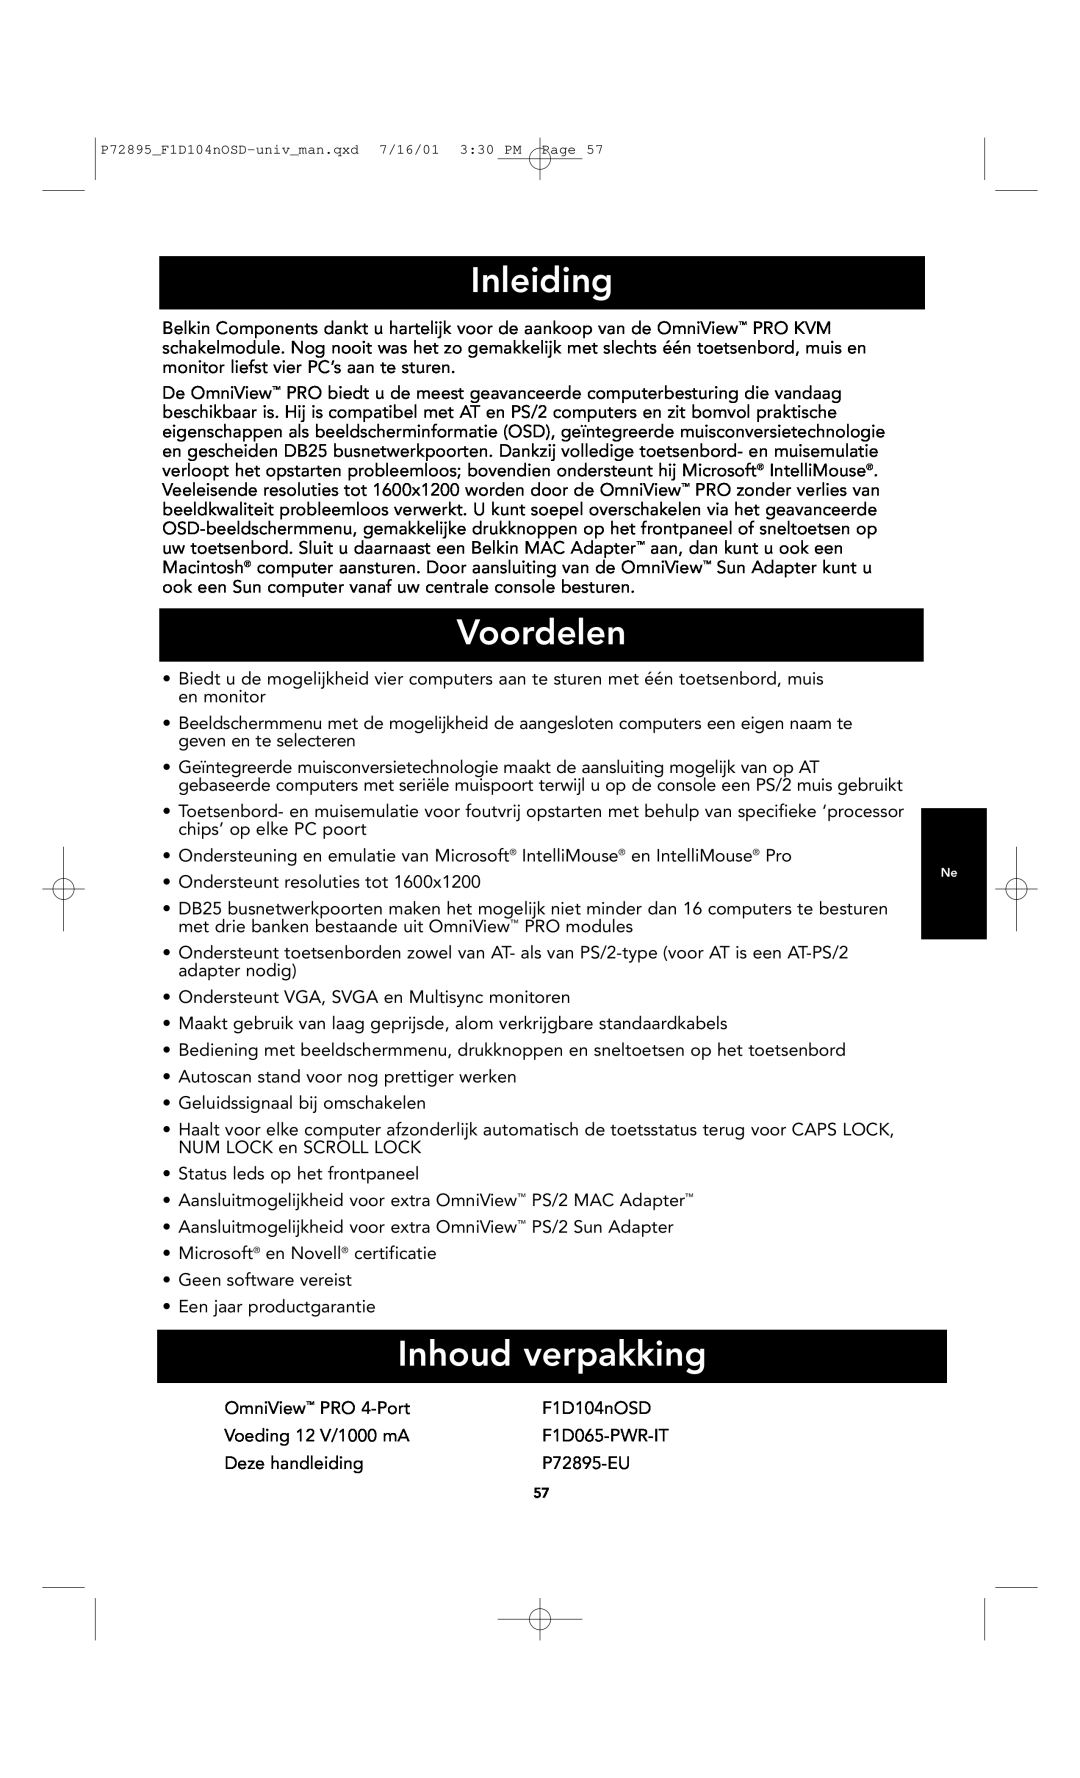 Belkin F1D104-OSD user manual Inleiding, Voordelen, Inhoud verpakking, P72895F1D104nOSD-univman.qxd 7/16/01 330 PM Page 